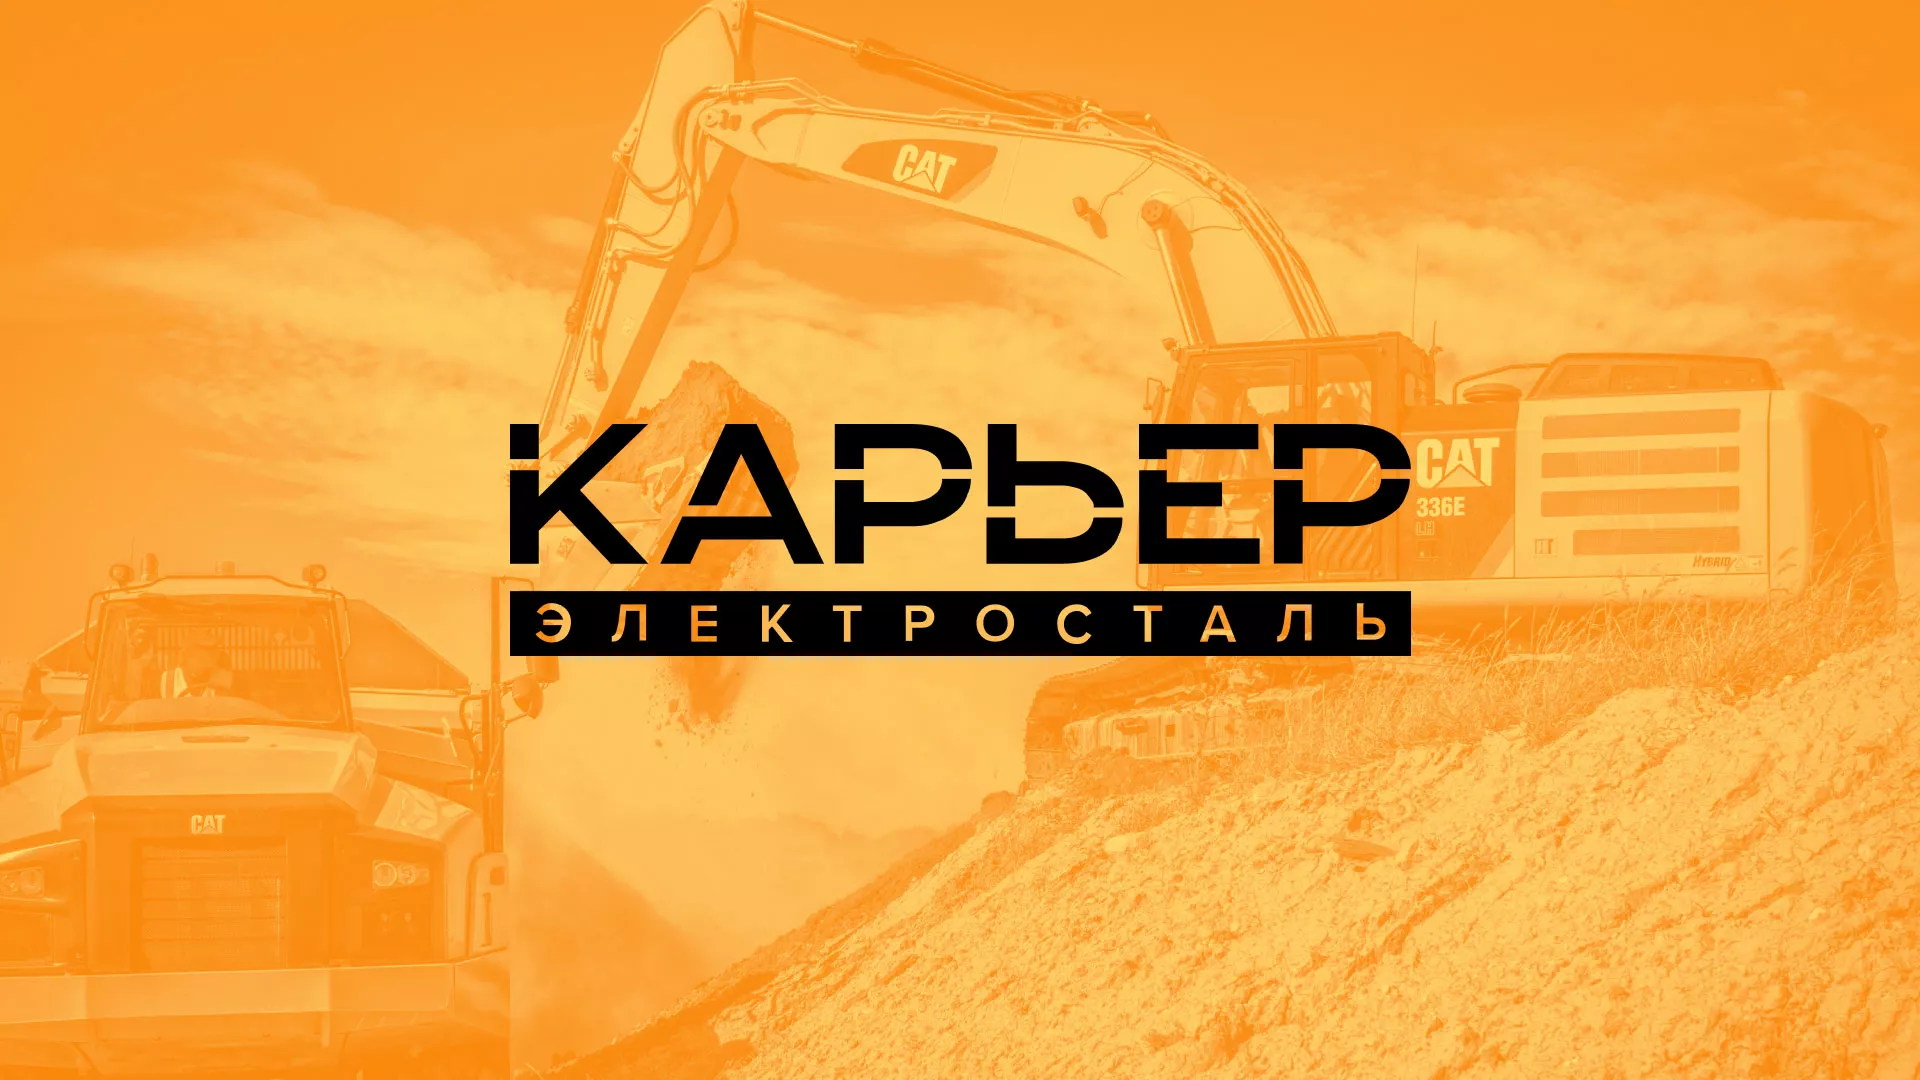 Разработка сайта по продаже нерудных материалов «Карьер» в Алексеевке